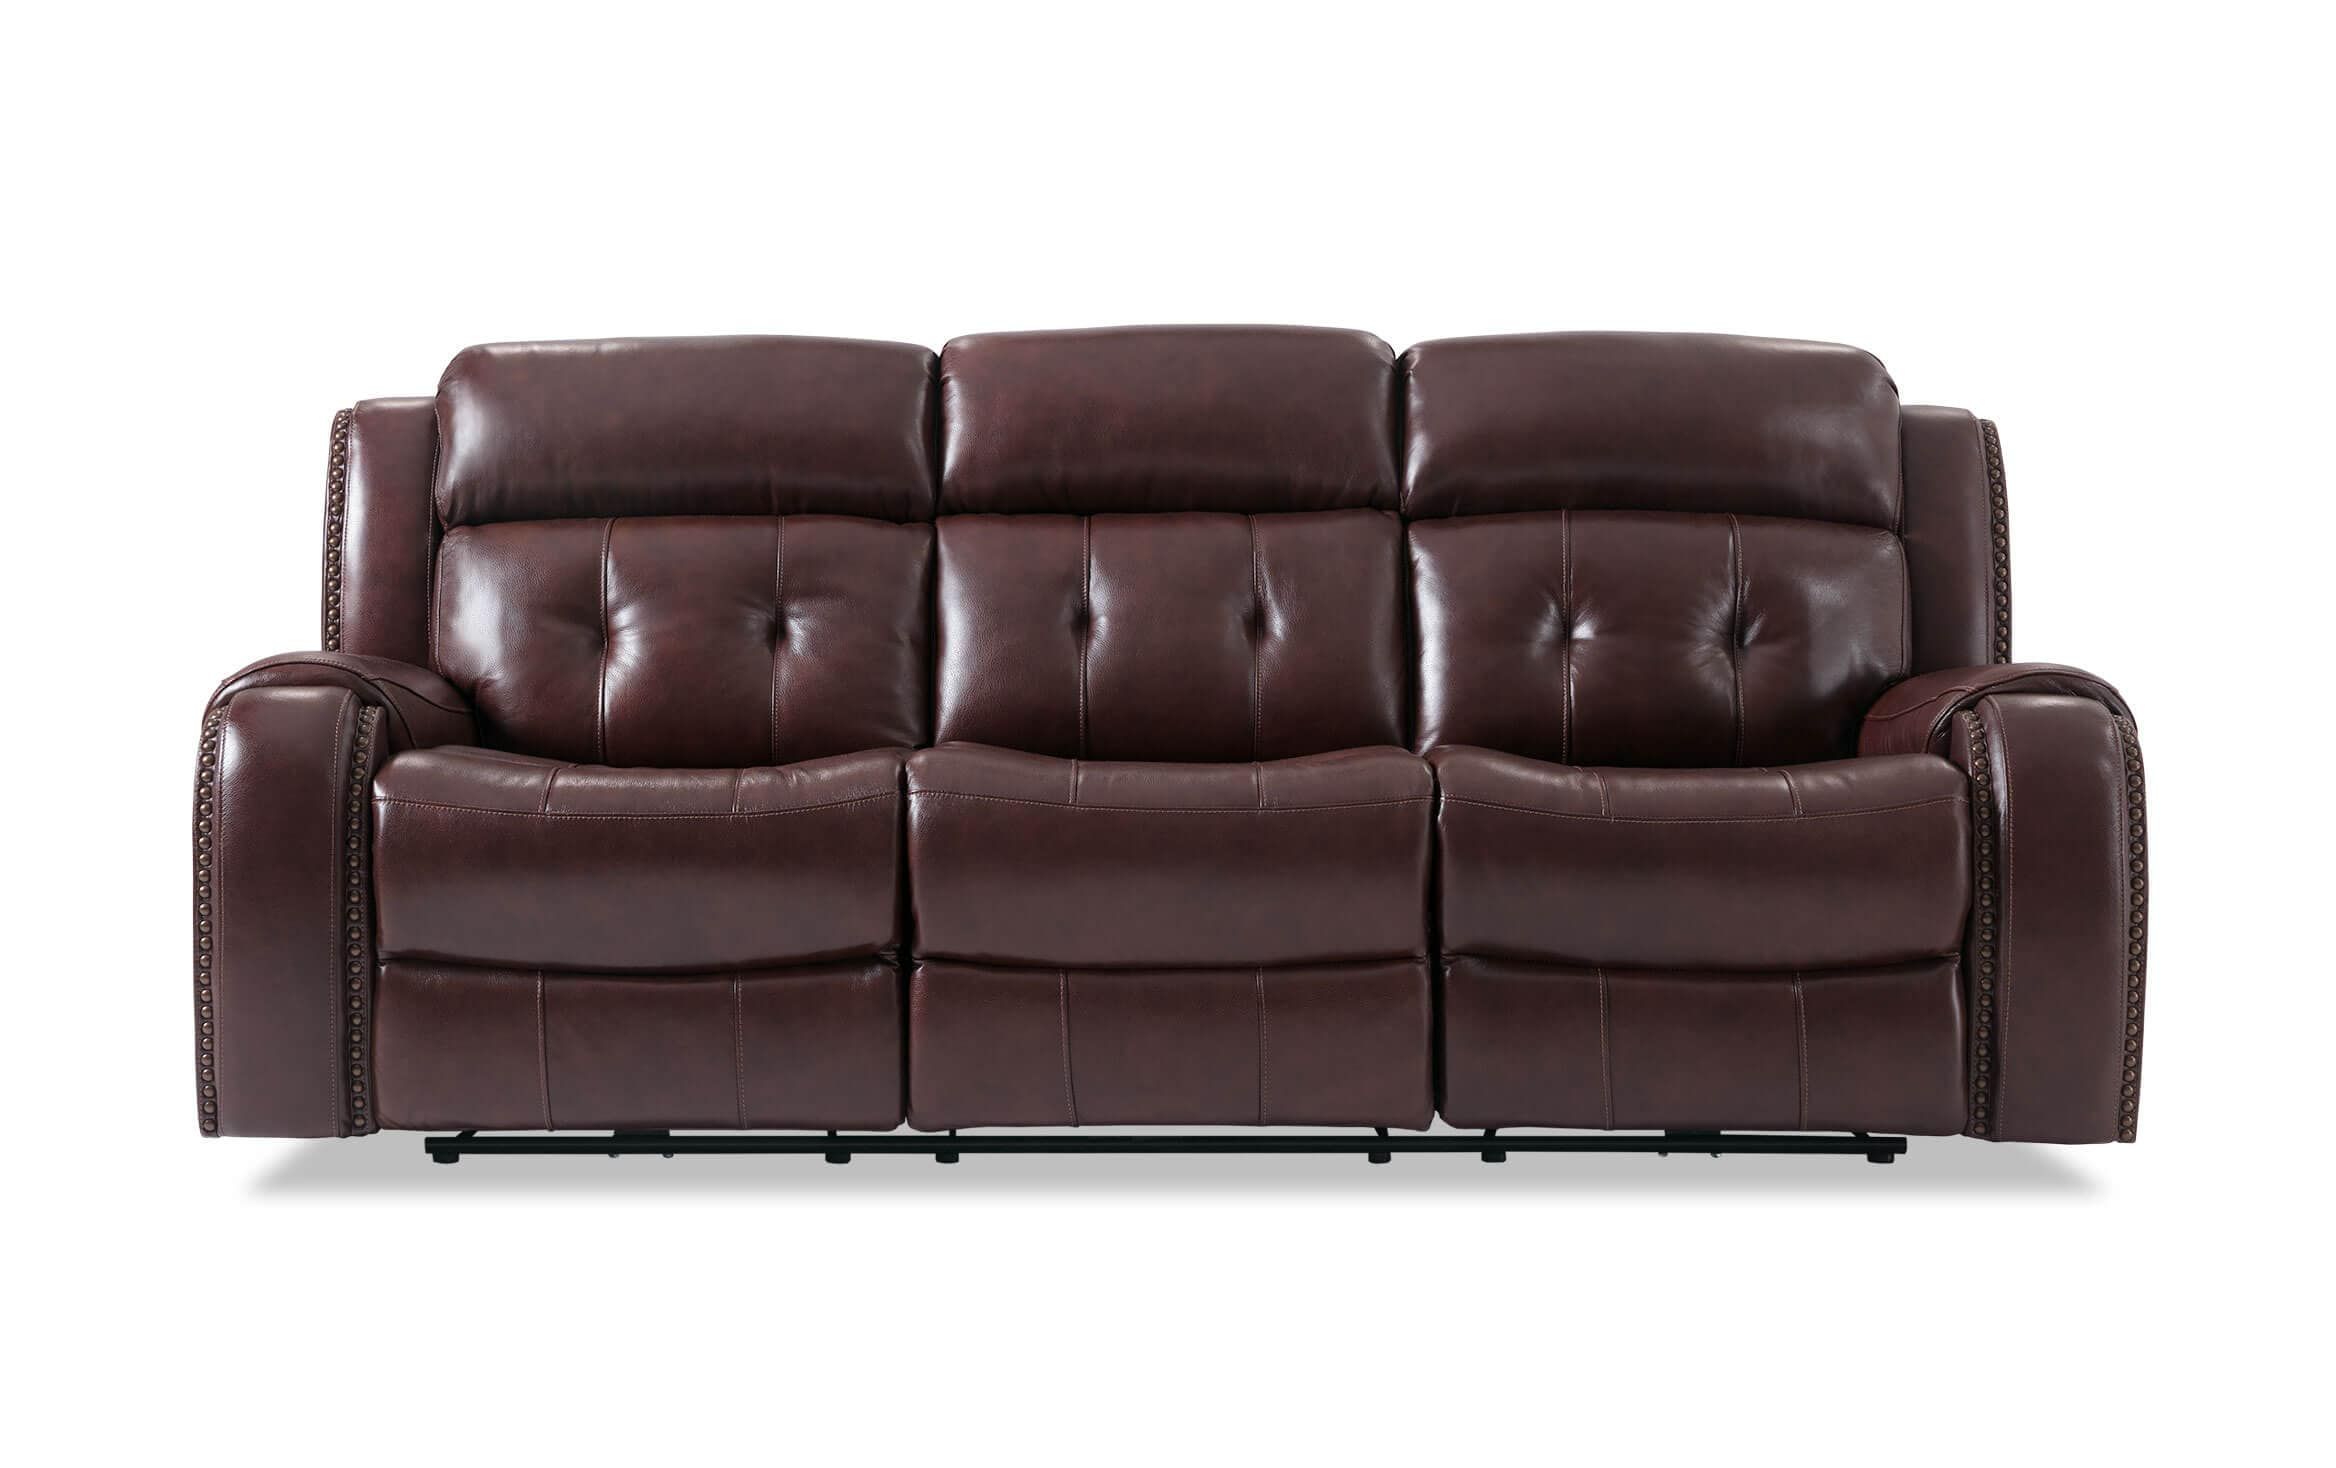 Bobs Furniture Leather Sofa : Trailblazer Gray Leather With Trailblazer Gray Leather Power Reclining Sofas (Photo 4 of 15)